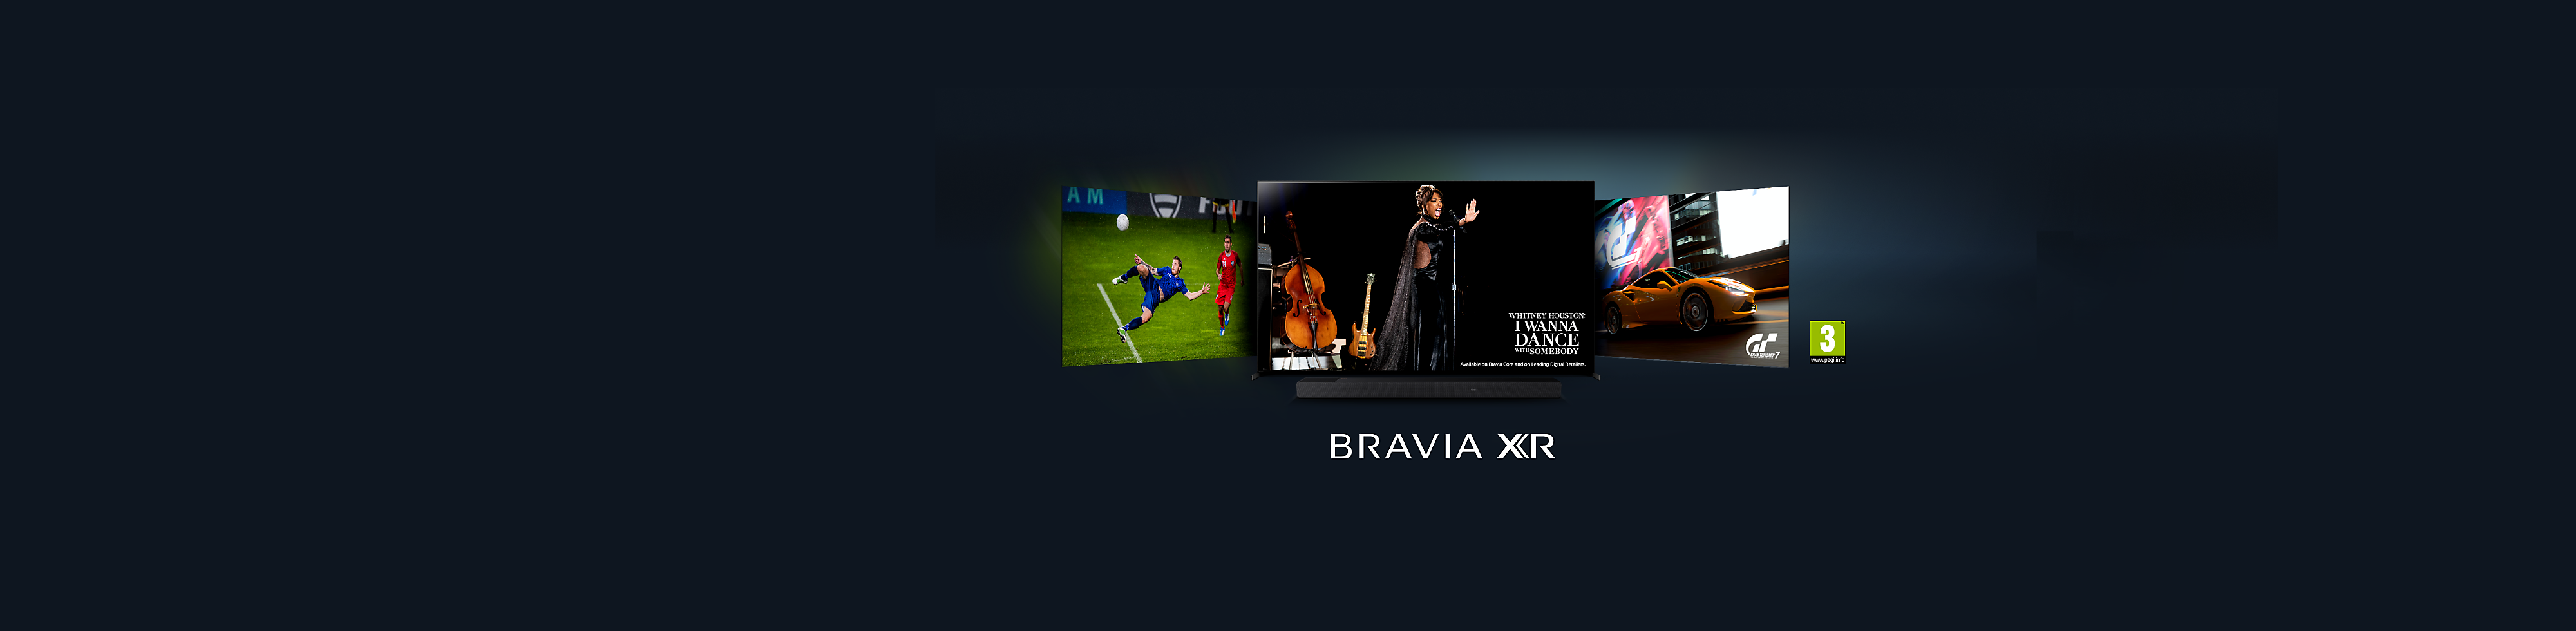 Fedezd fel az új BRAVIA XR tévéket